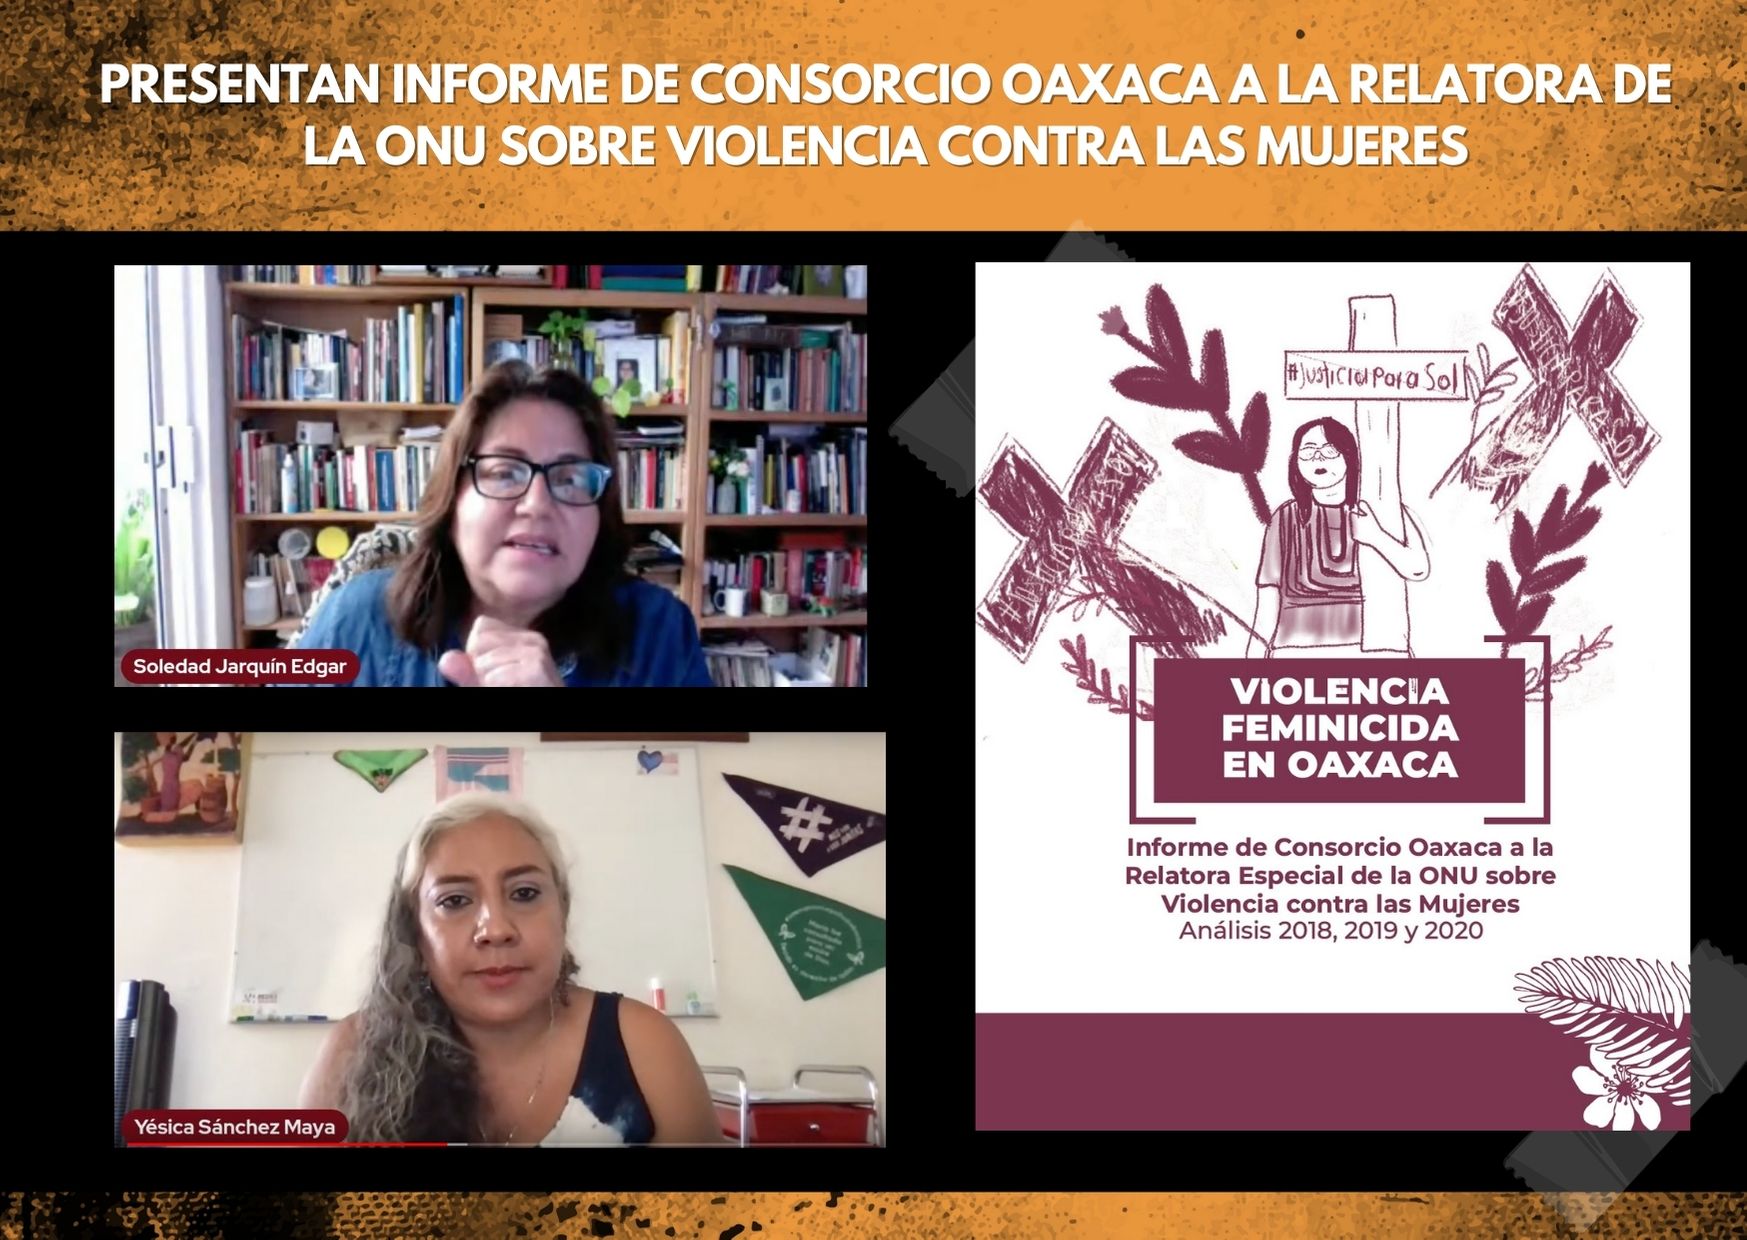 Presentan informe de Consorcio Oaxaca a la Relatora de la ONU sobre violencia contra las mujeres